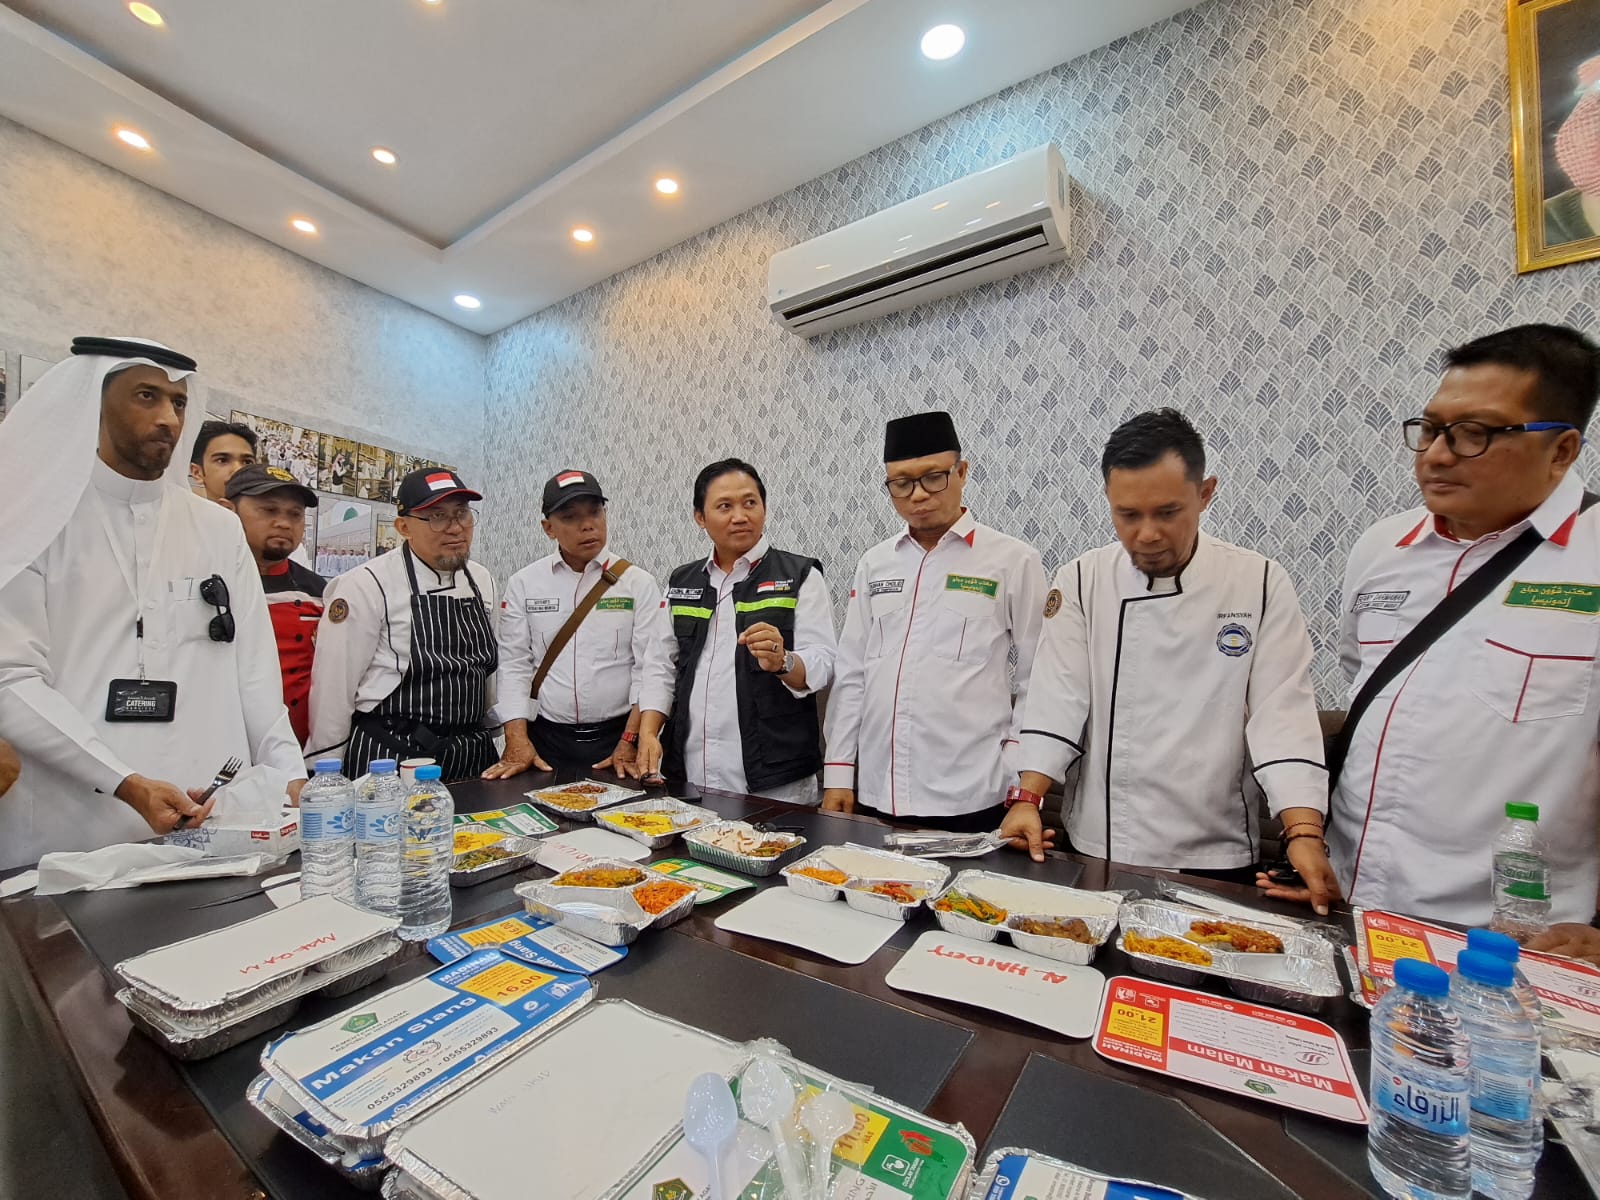 Daftar Menu Khas Nusantara Untuk Jamaah Haji